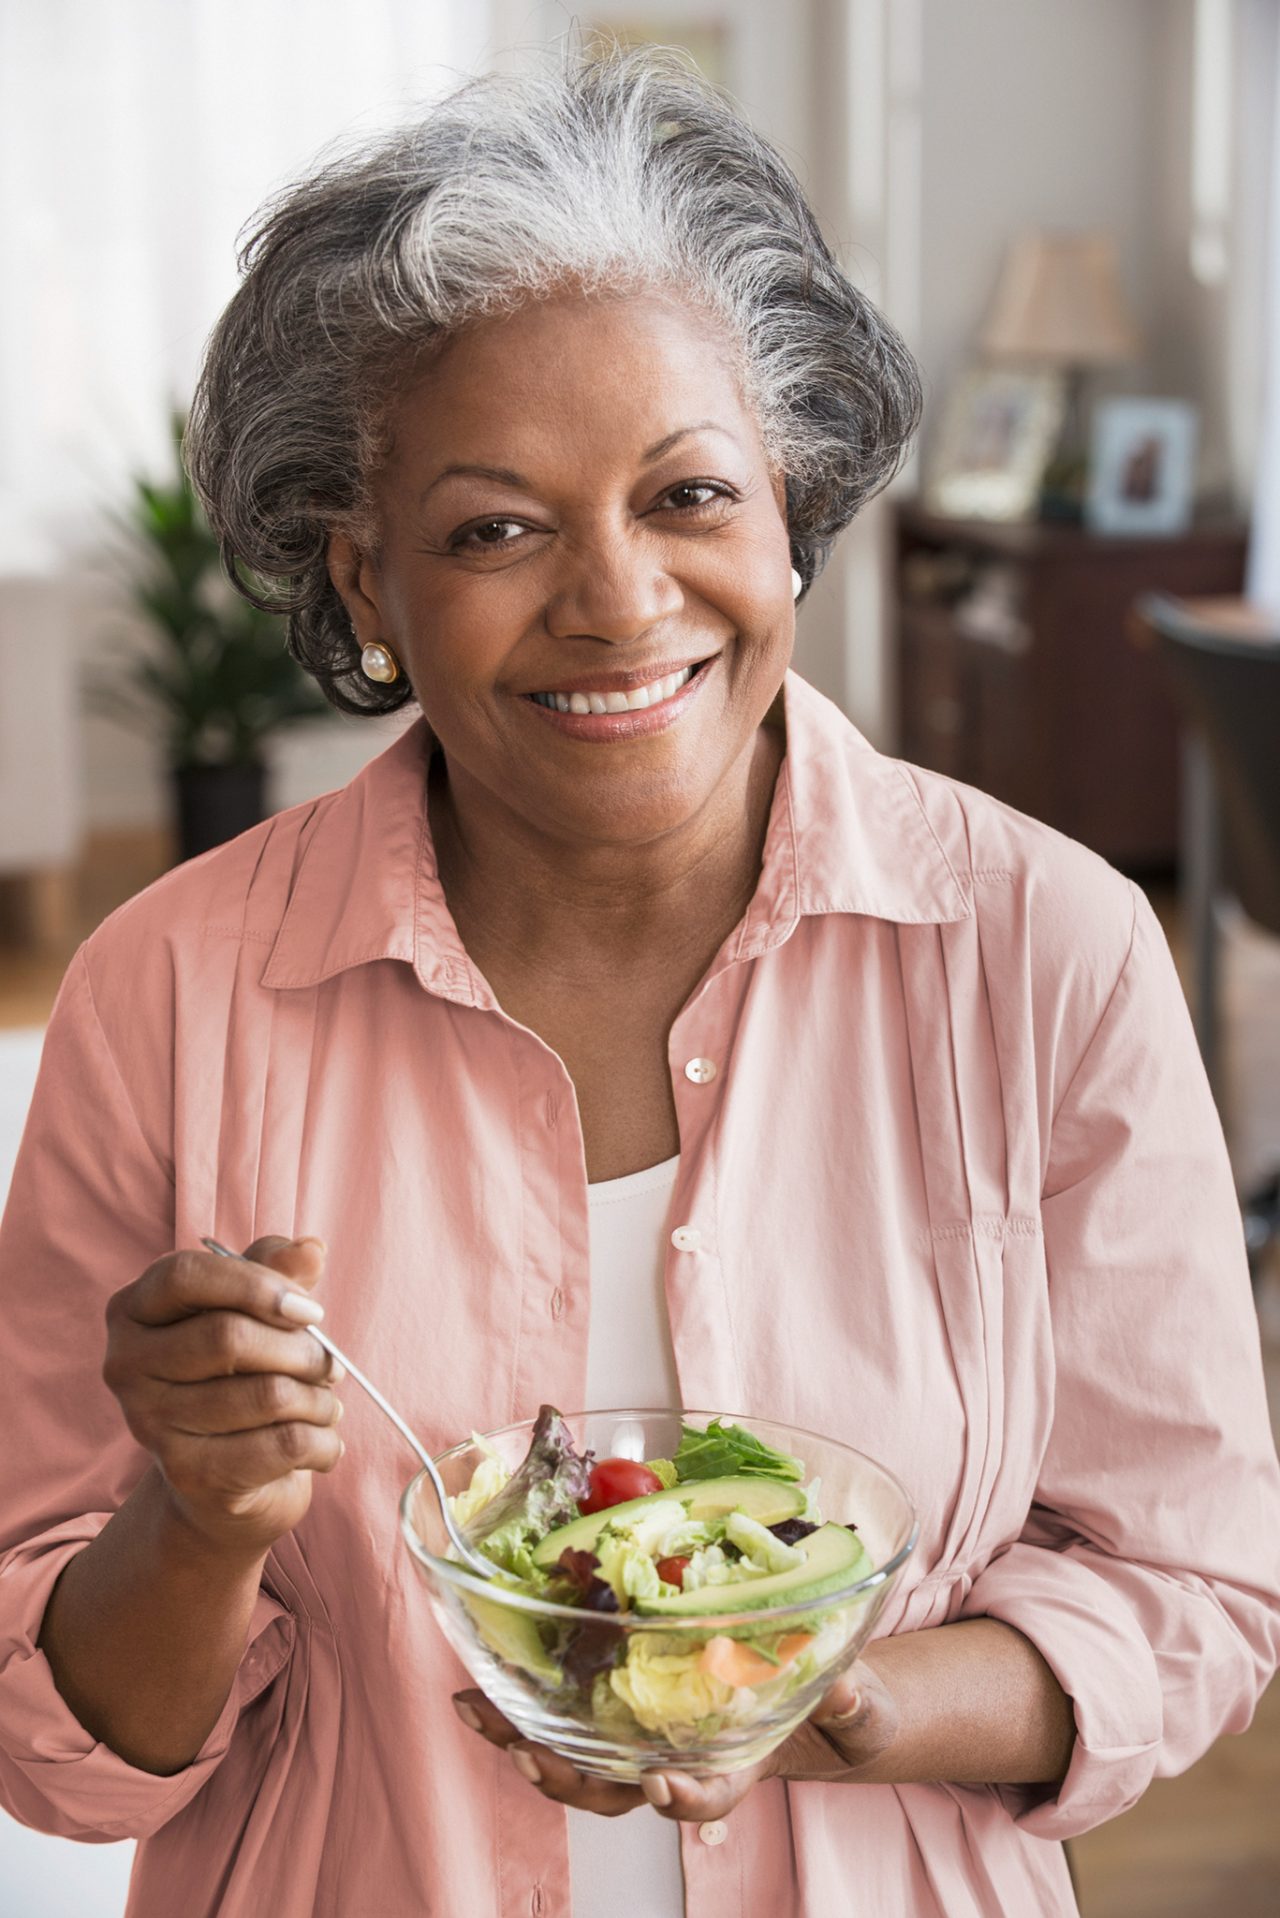 Una mujer negra de edad avanzada sonriente sostiene un tazón que contiene ensalada.